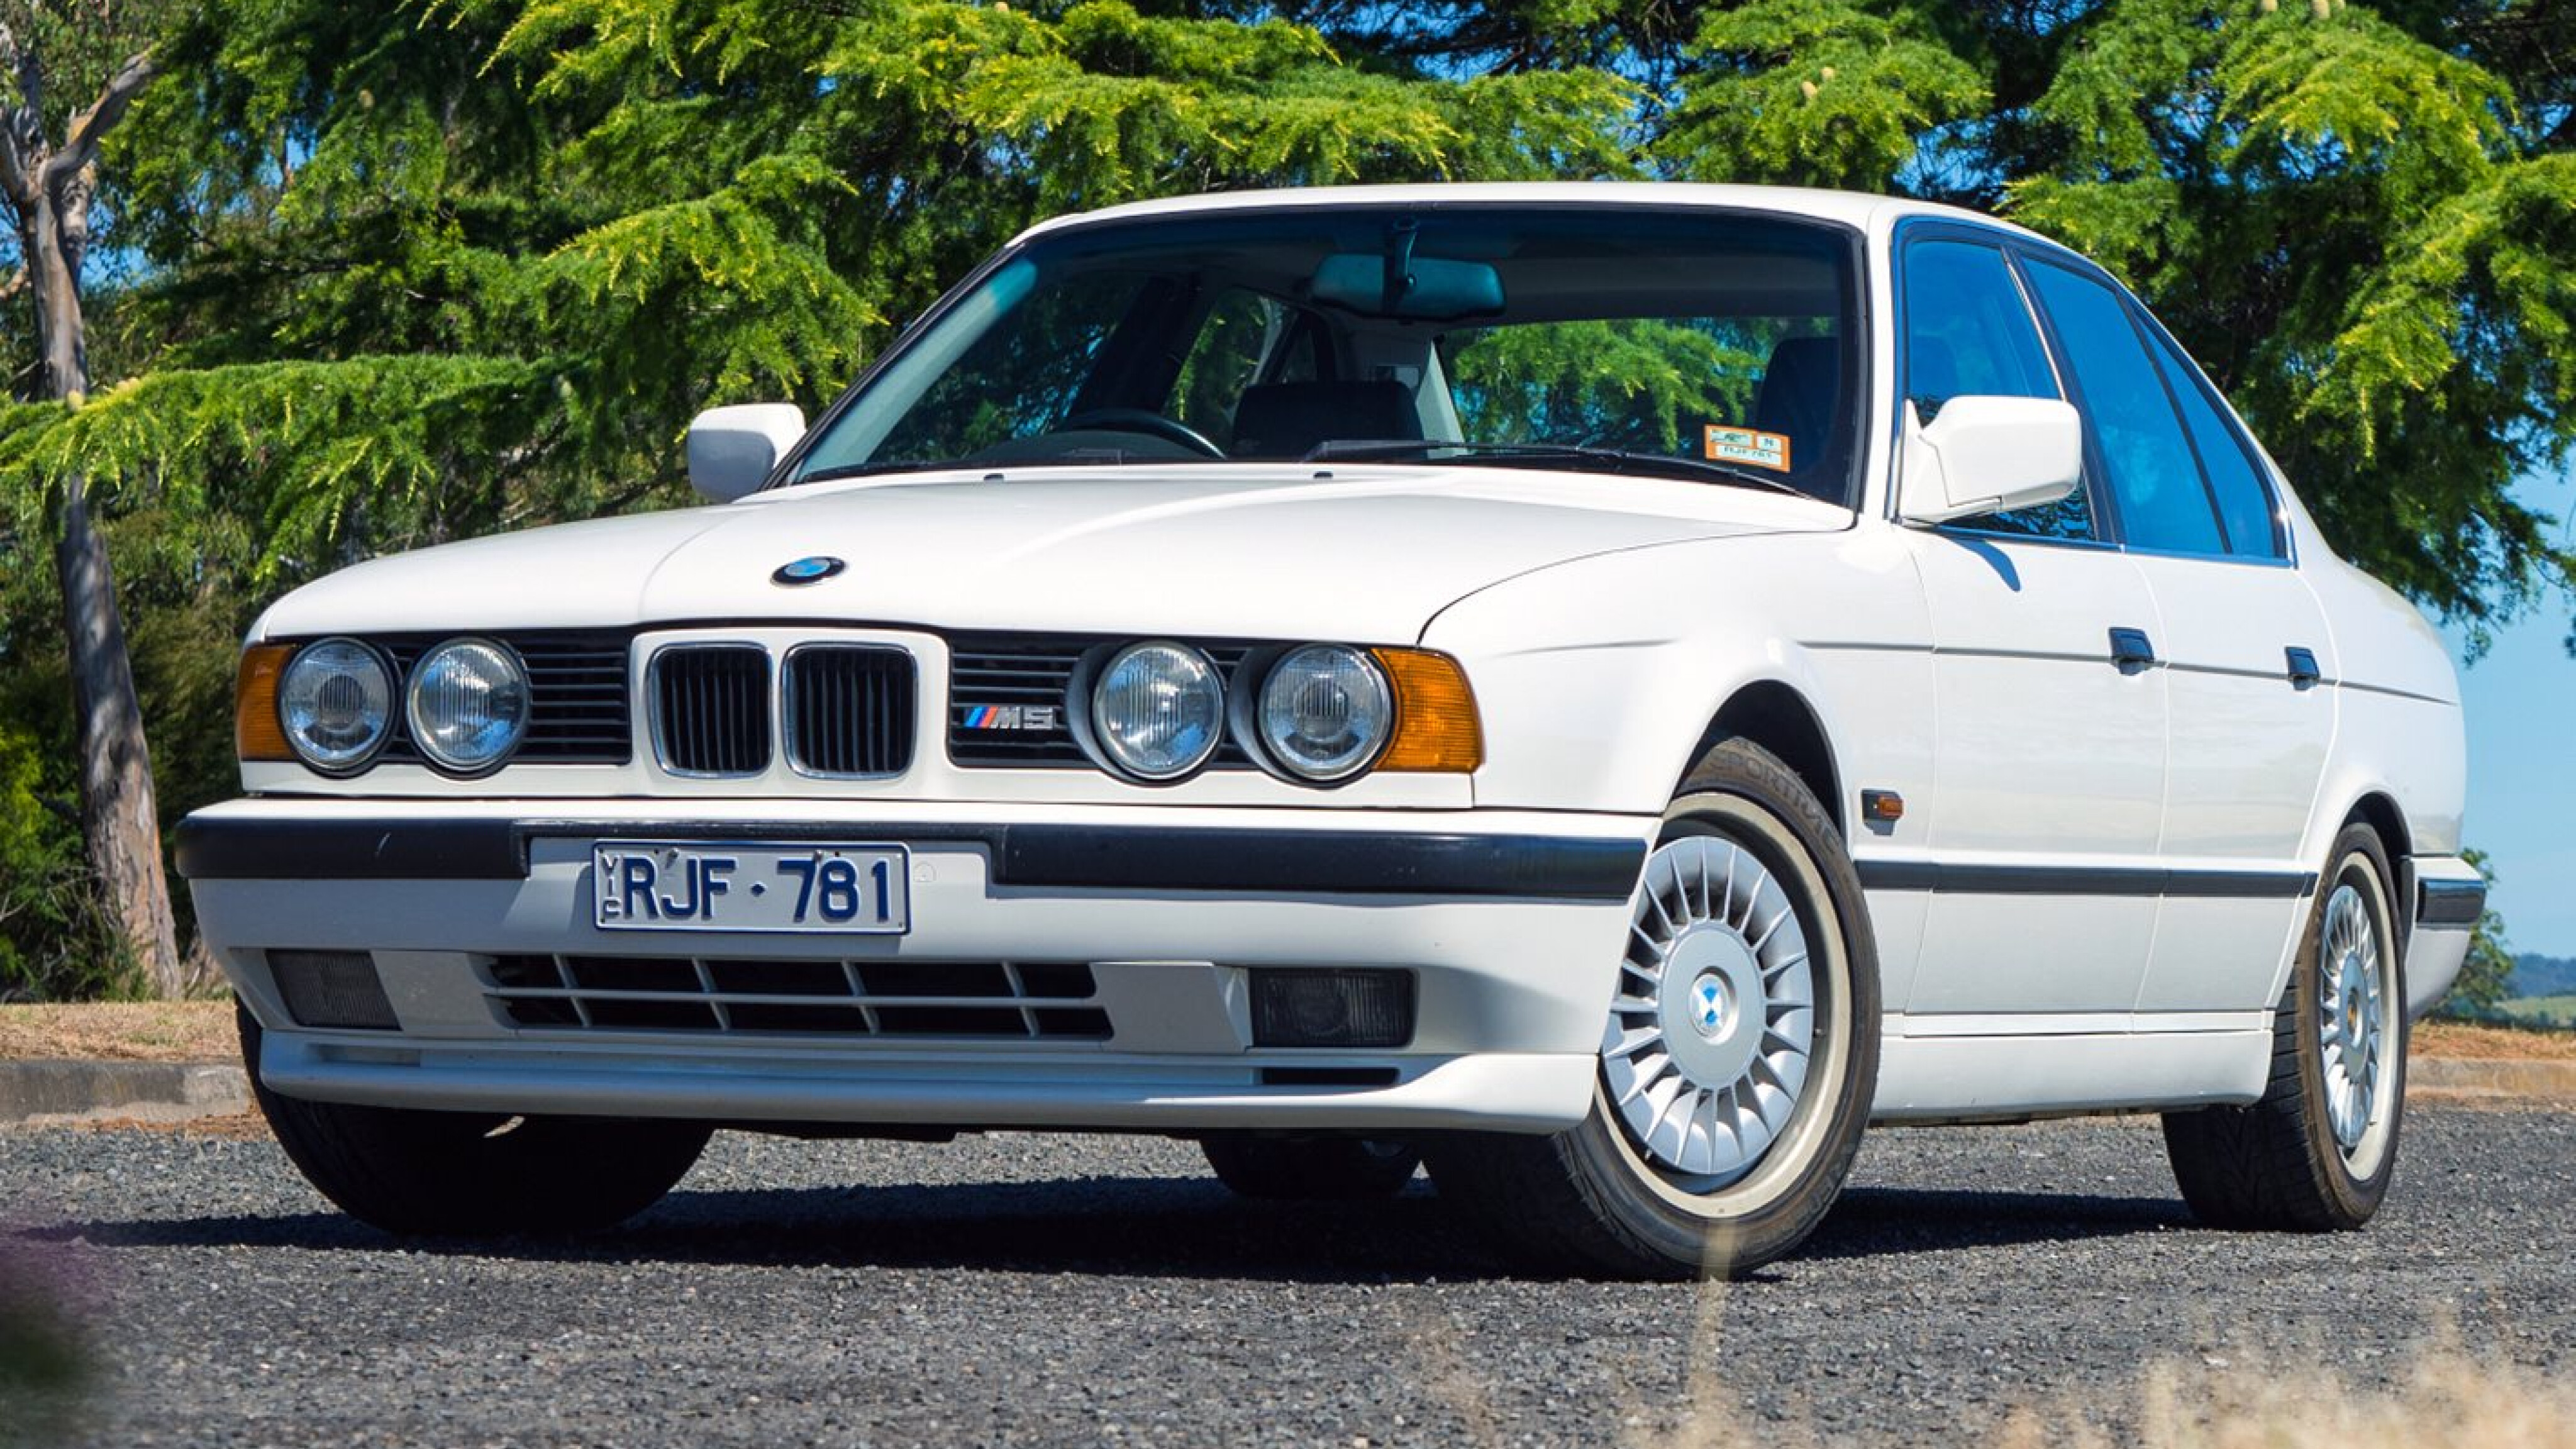 BMW E34 M5 added to BMW Aus heritage fleet